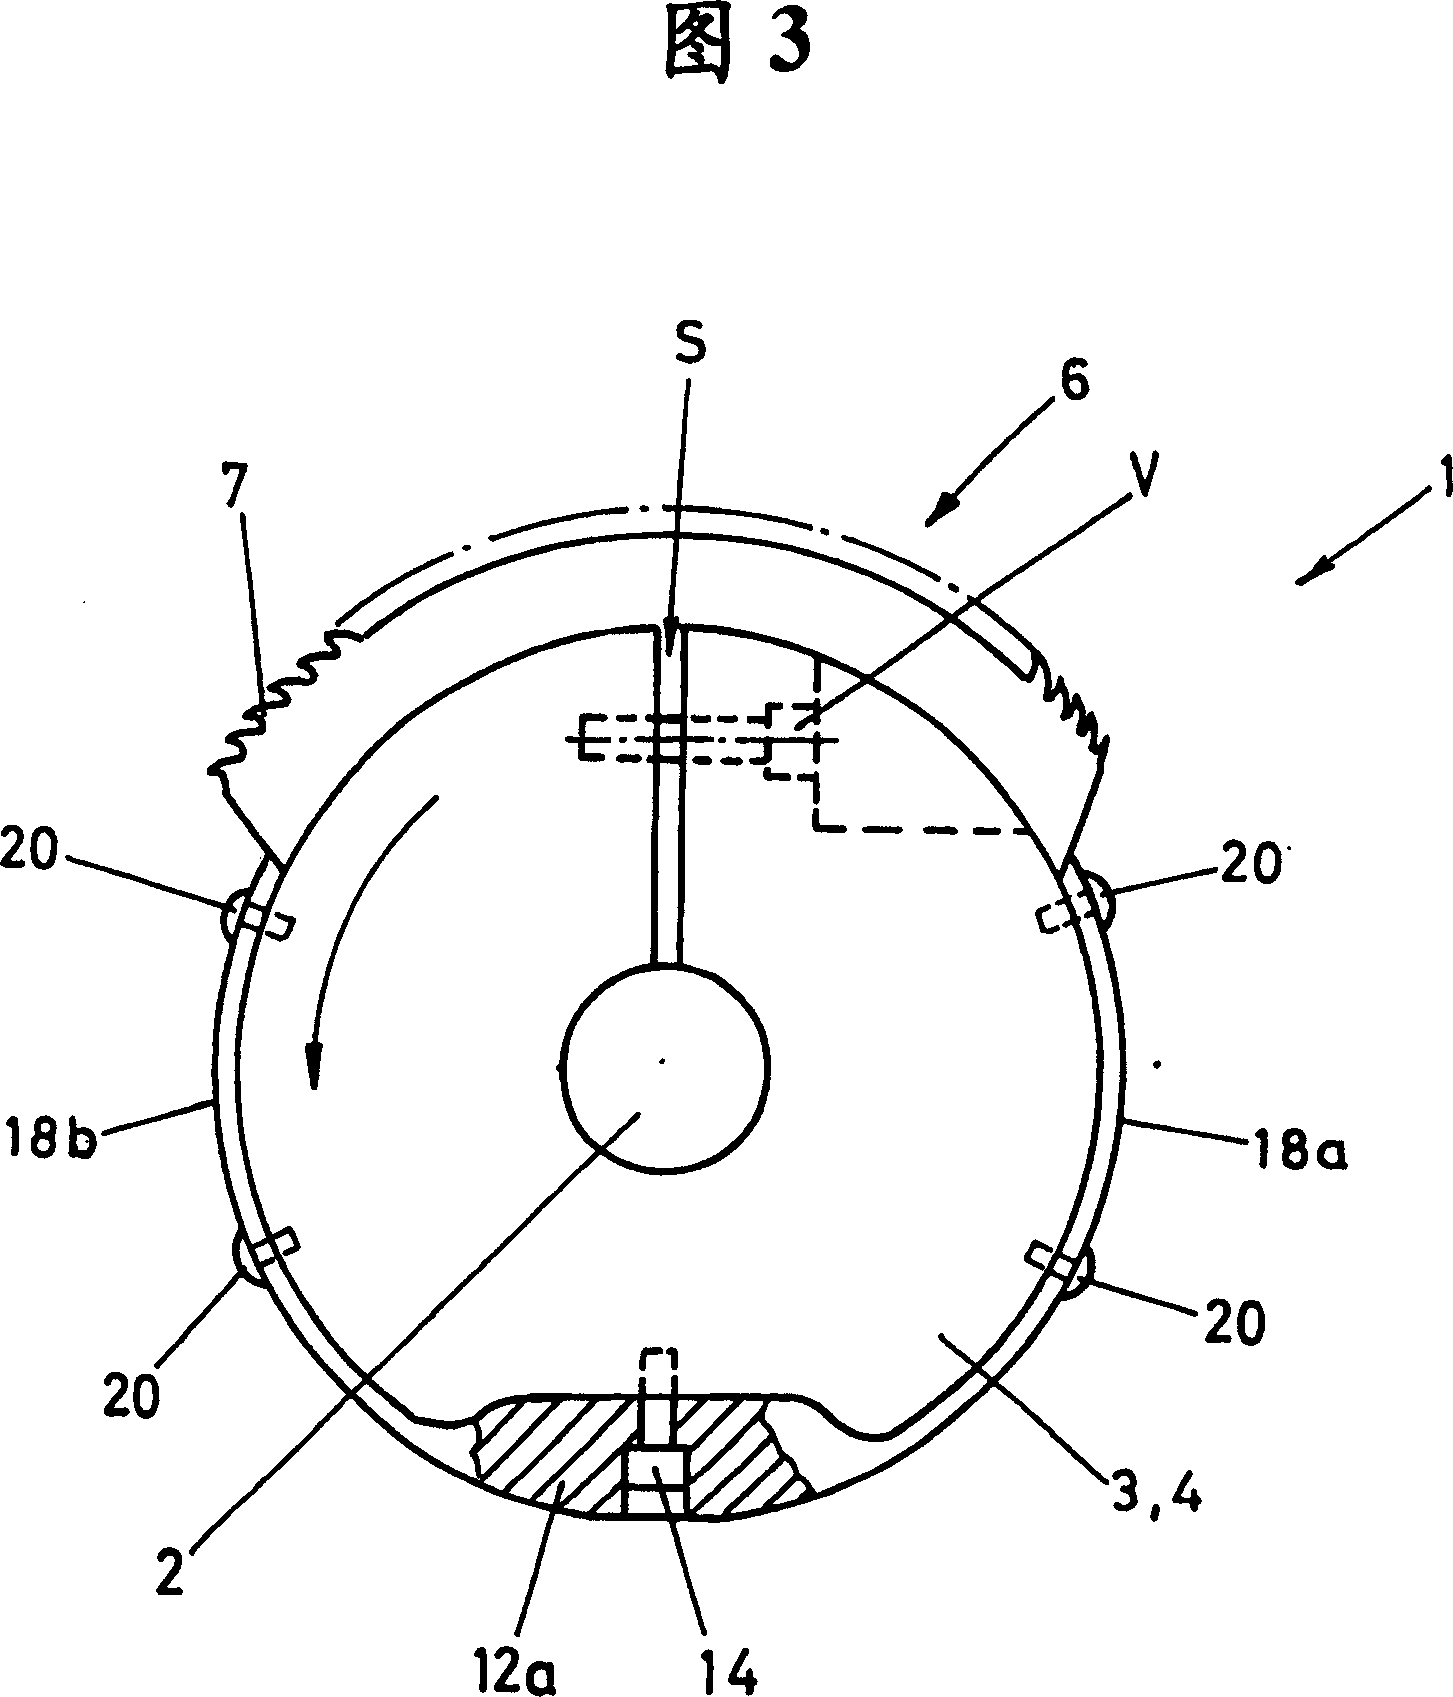 Circular comb for circular comber